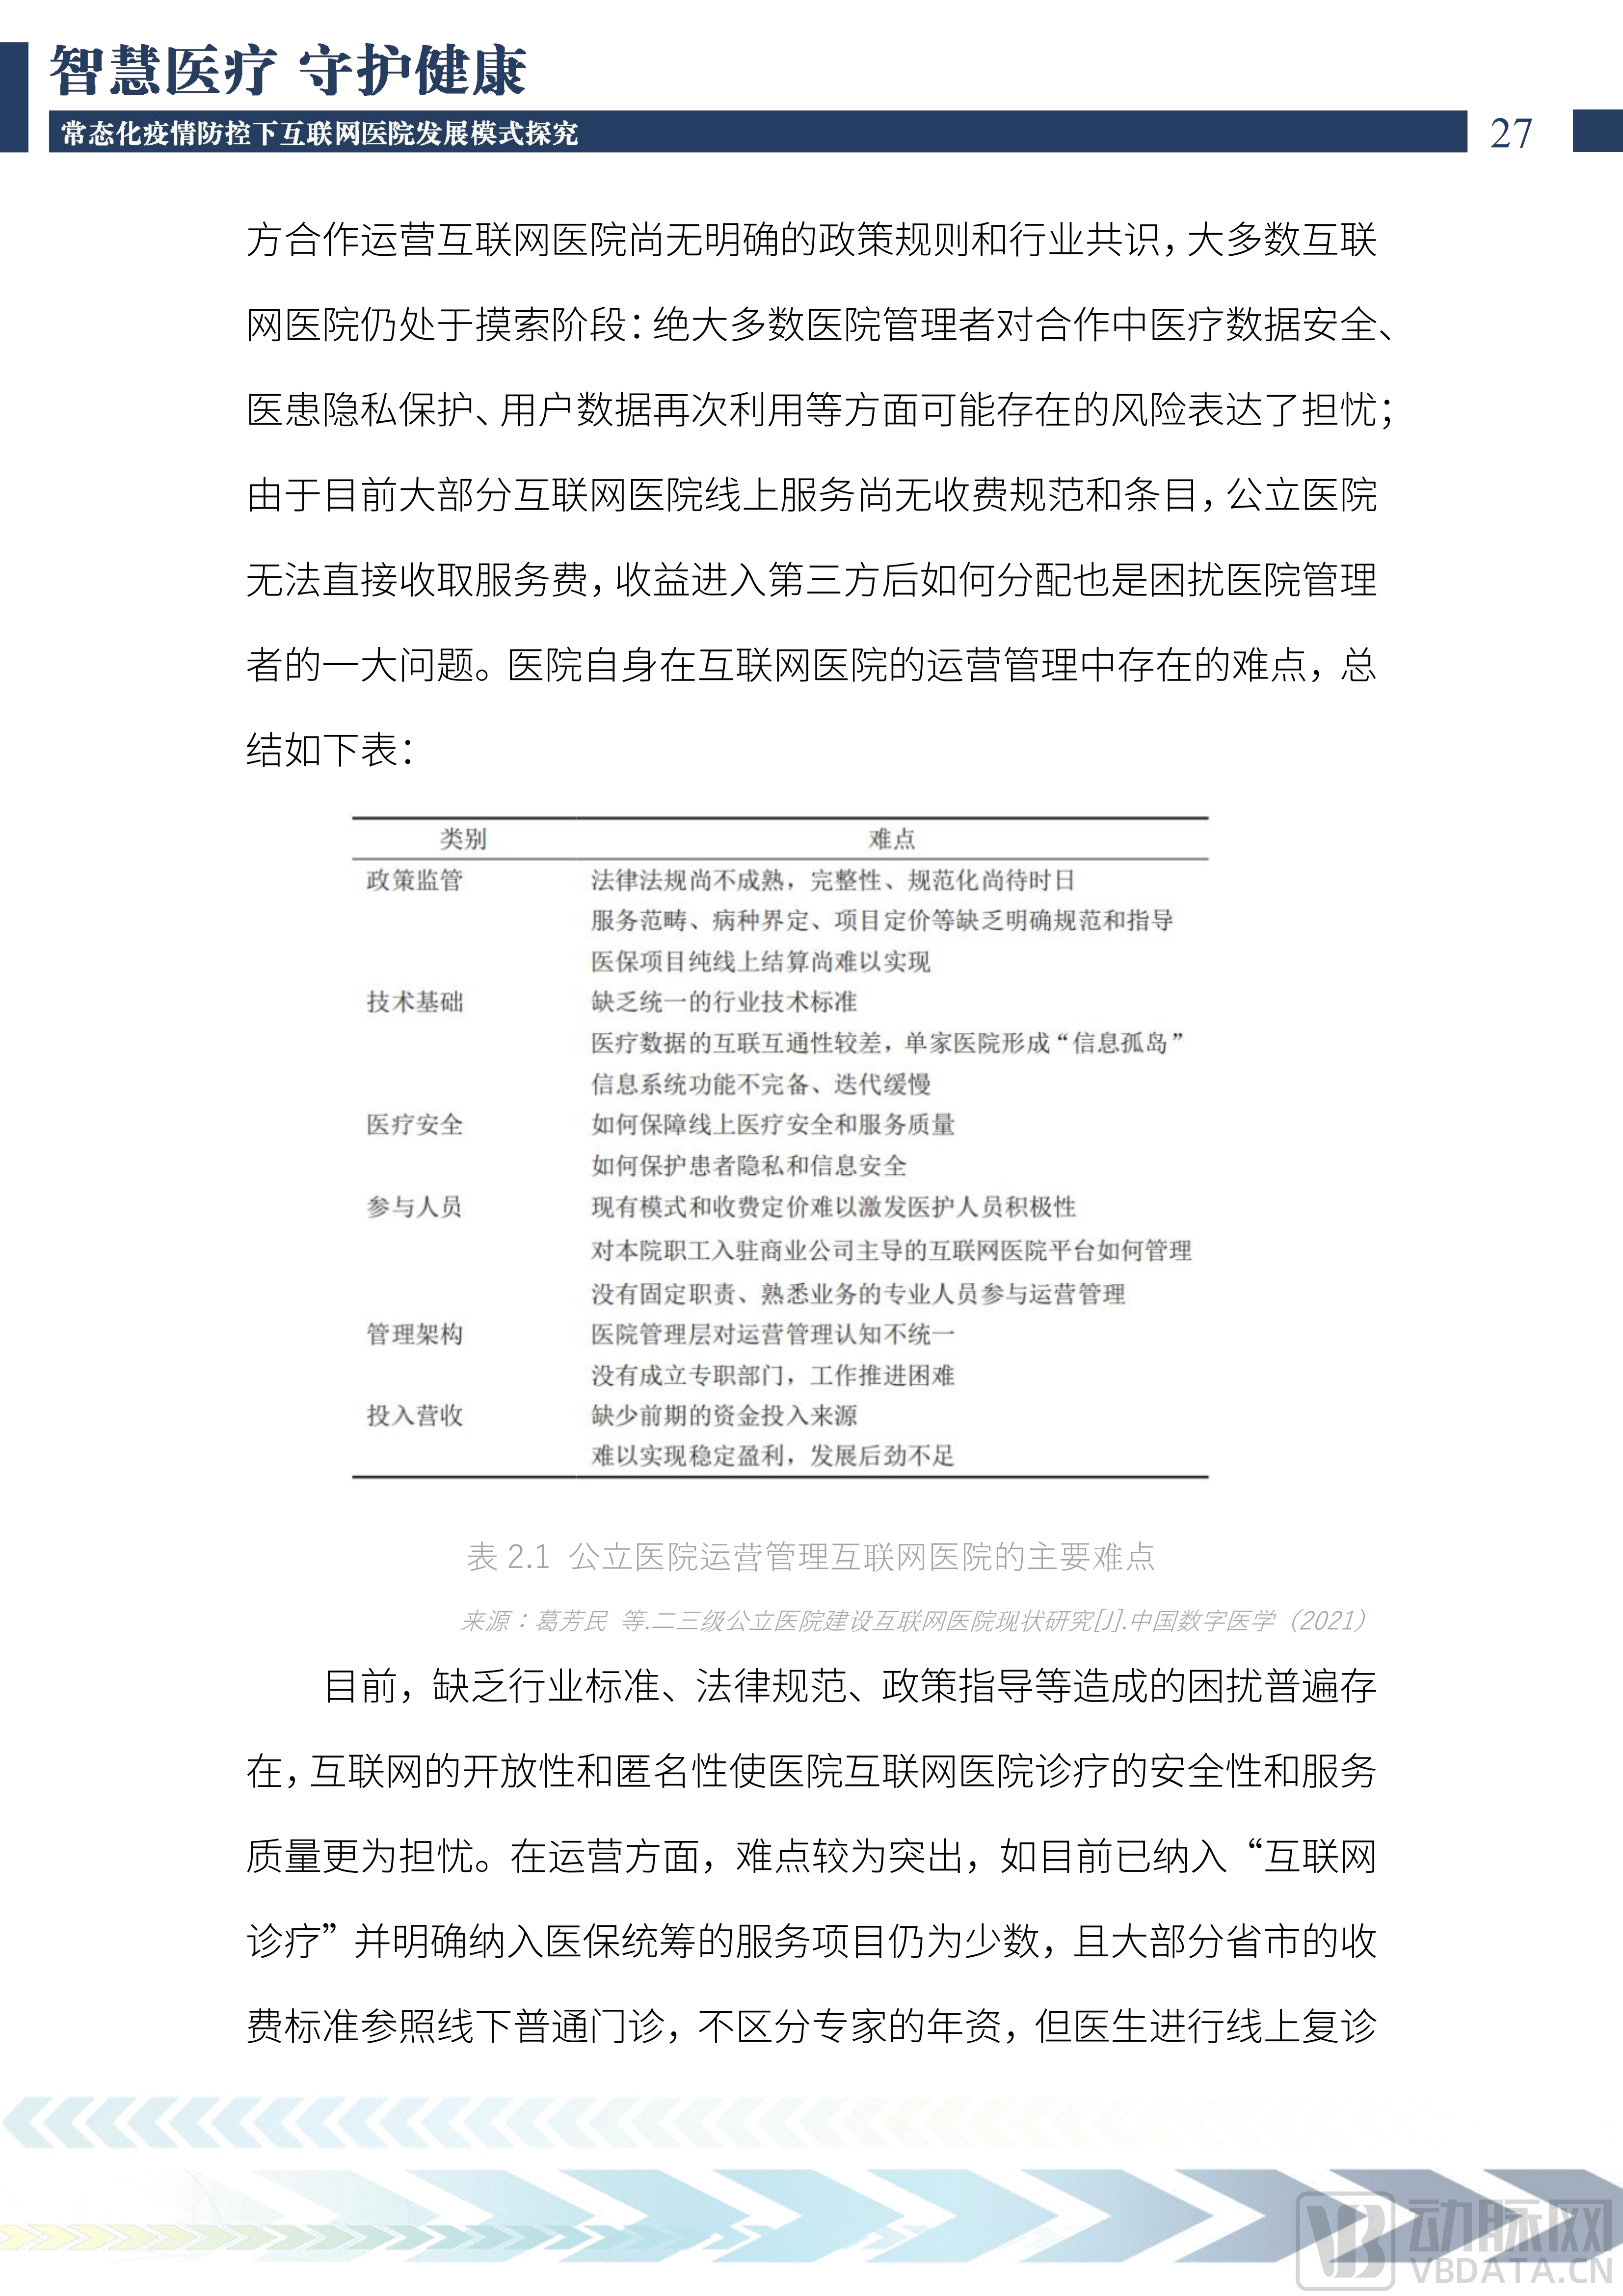 2022中国互联网医院发展调研报告(1)_28.png